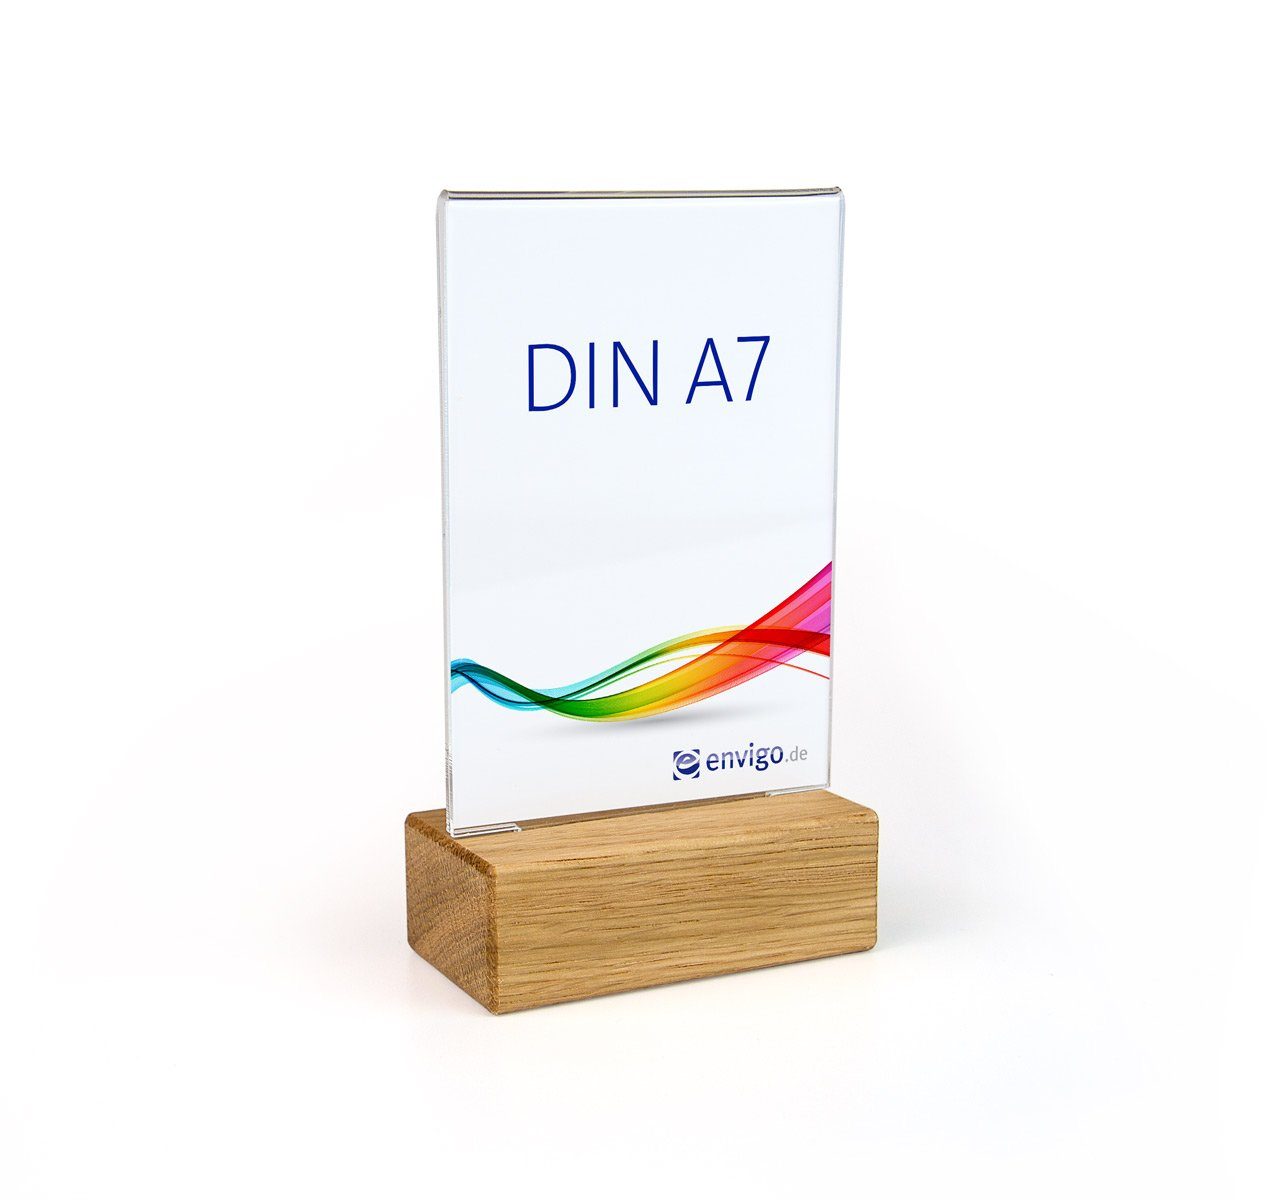 A7 DIN Holz+Acrylglas Einzelrahmen hoch, envigo.de »Eiche« Tischaufsteller